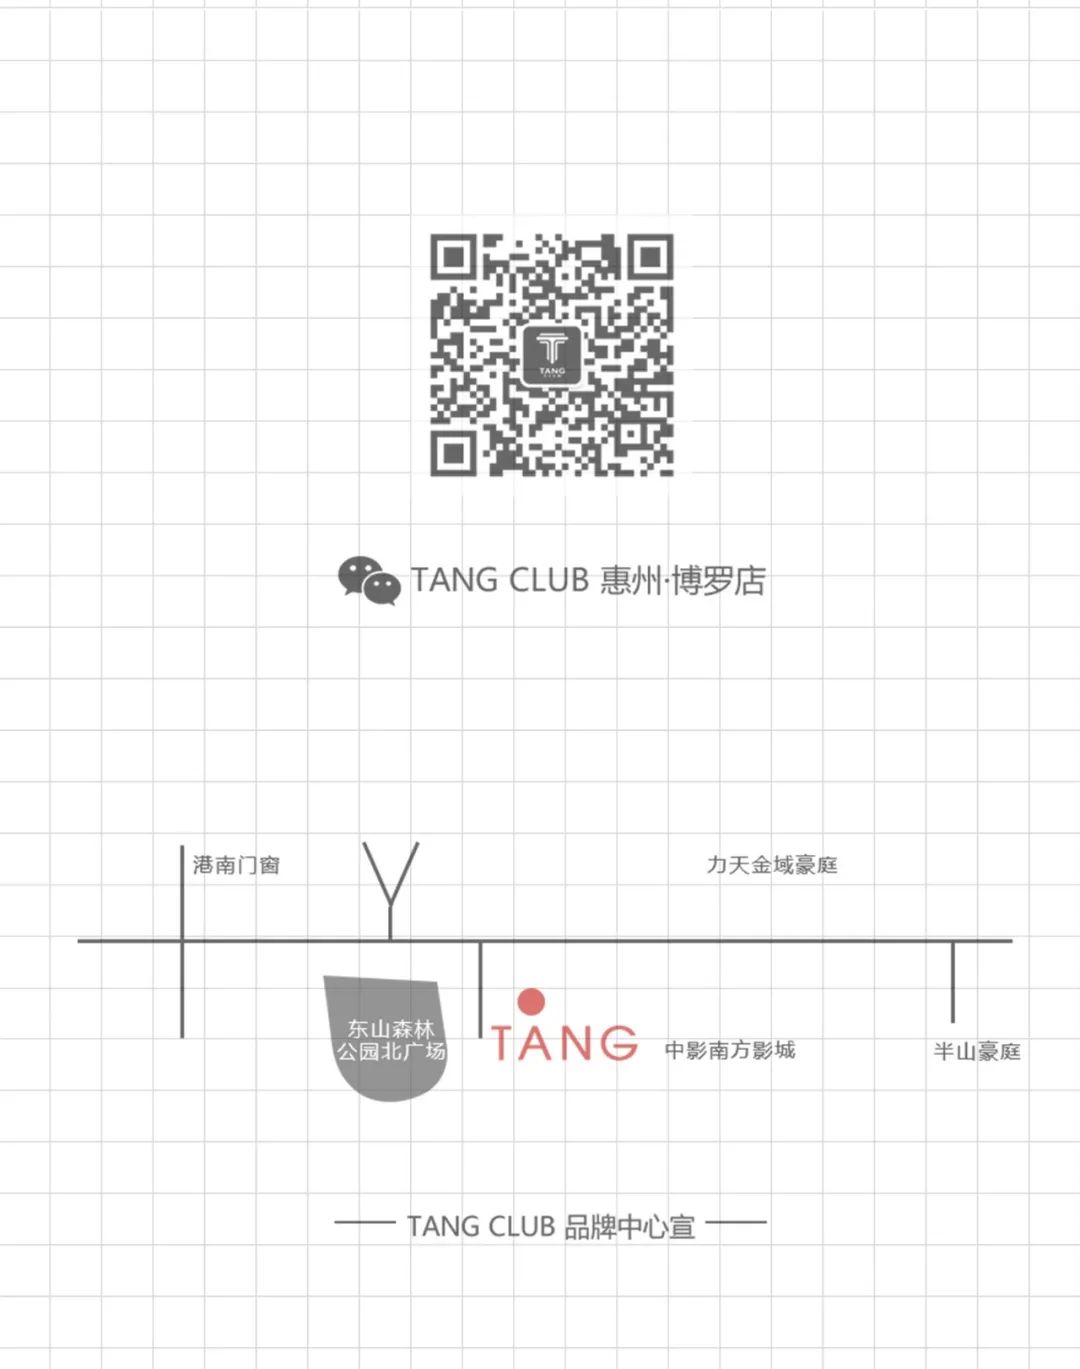 TANG CLUB｜2020.08.22 PYRO百大 签约网红DJ-KANA 未来赛博都市·机甲战姬-博罗TANG CLUB/TANG酒吧